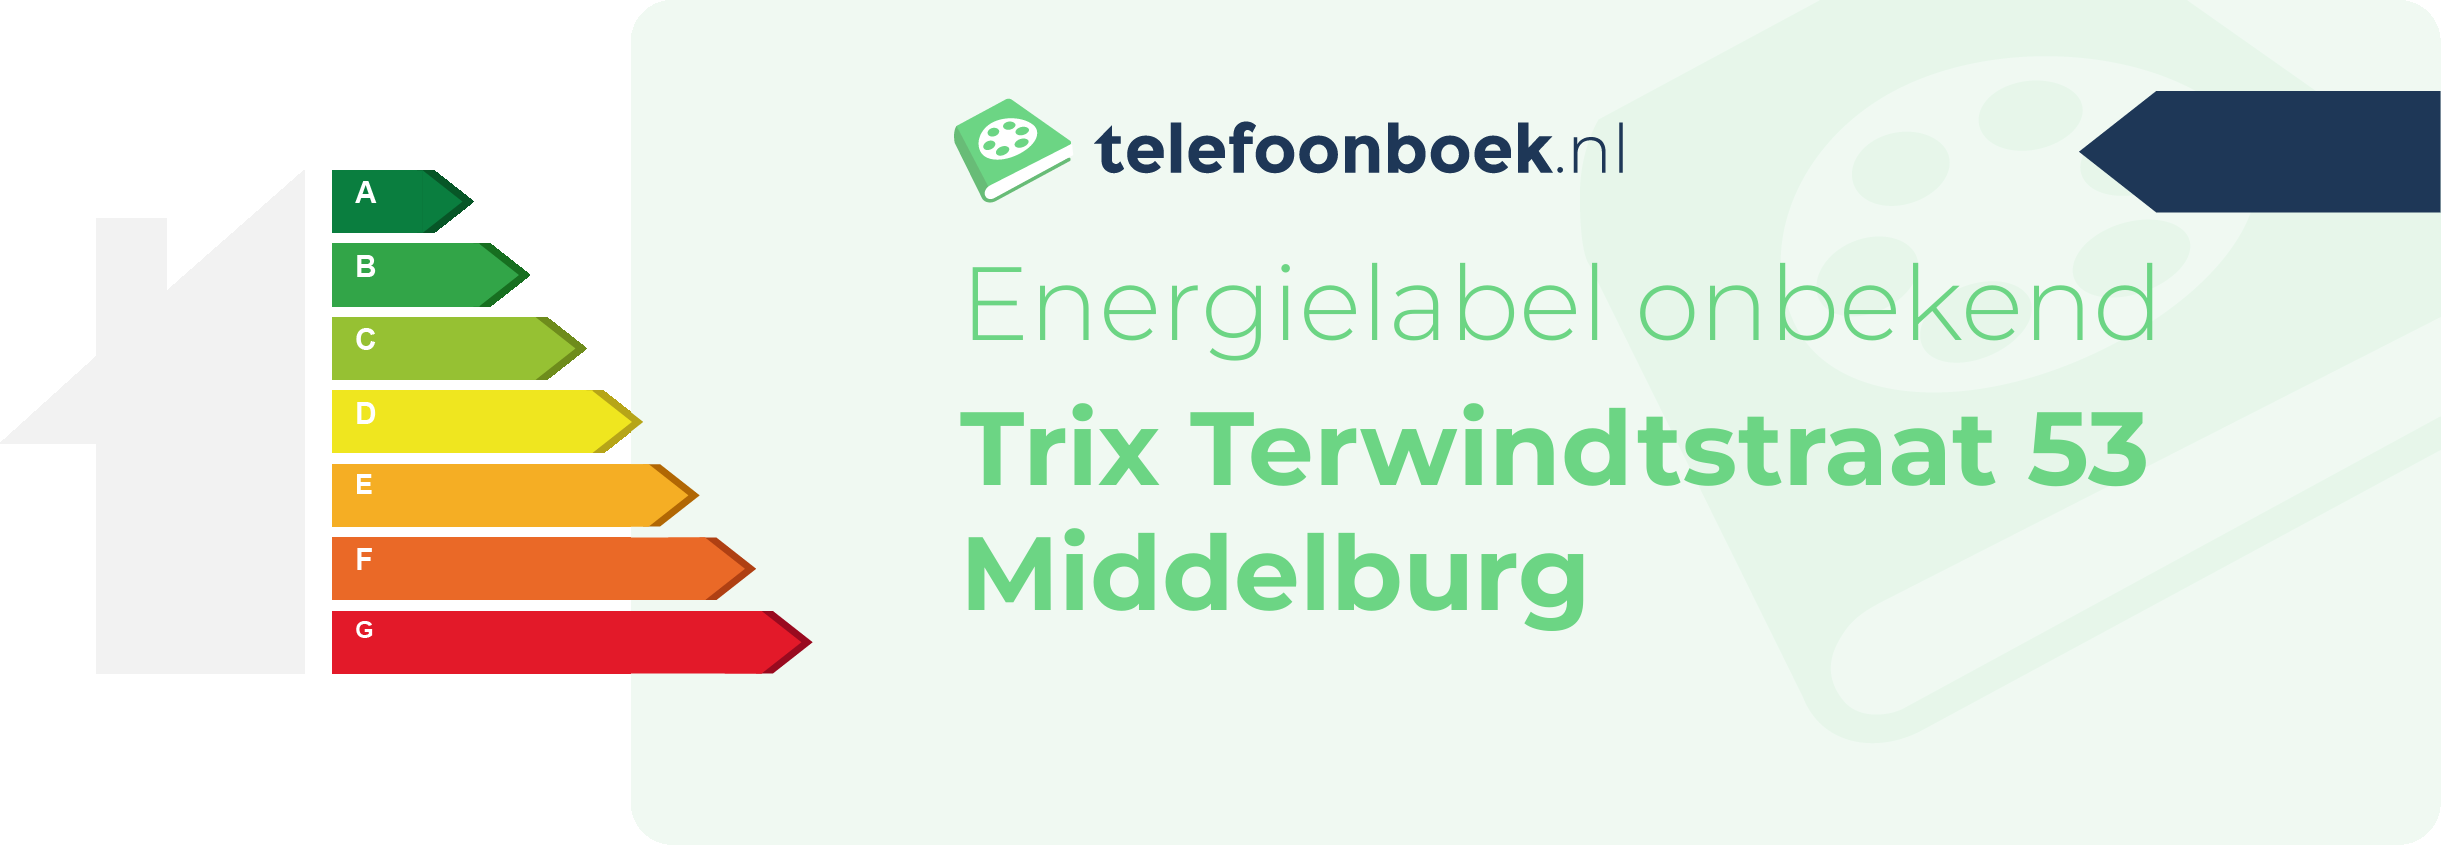 Energielabel Trix Terwindtstraat 53 Middelburg